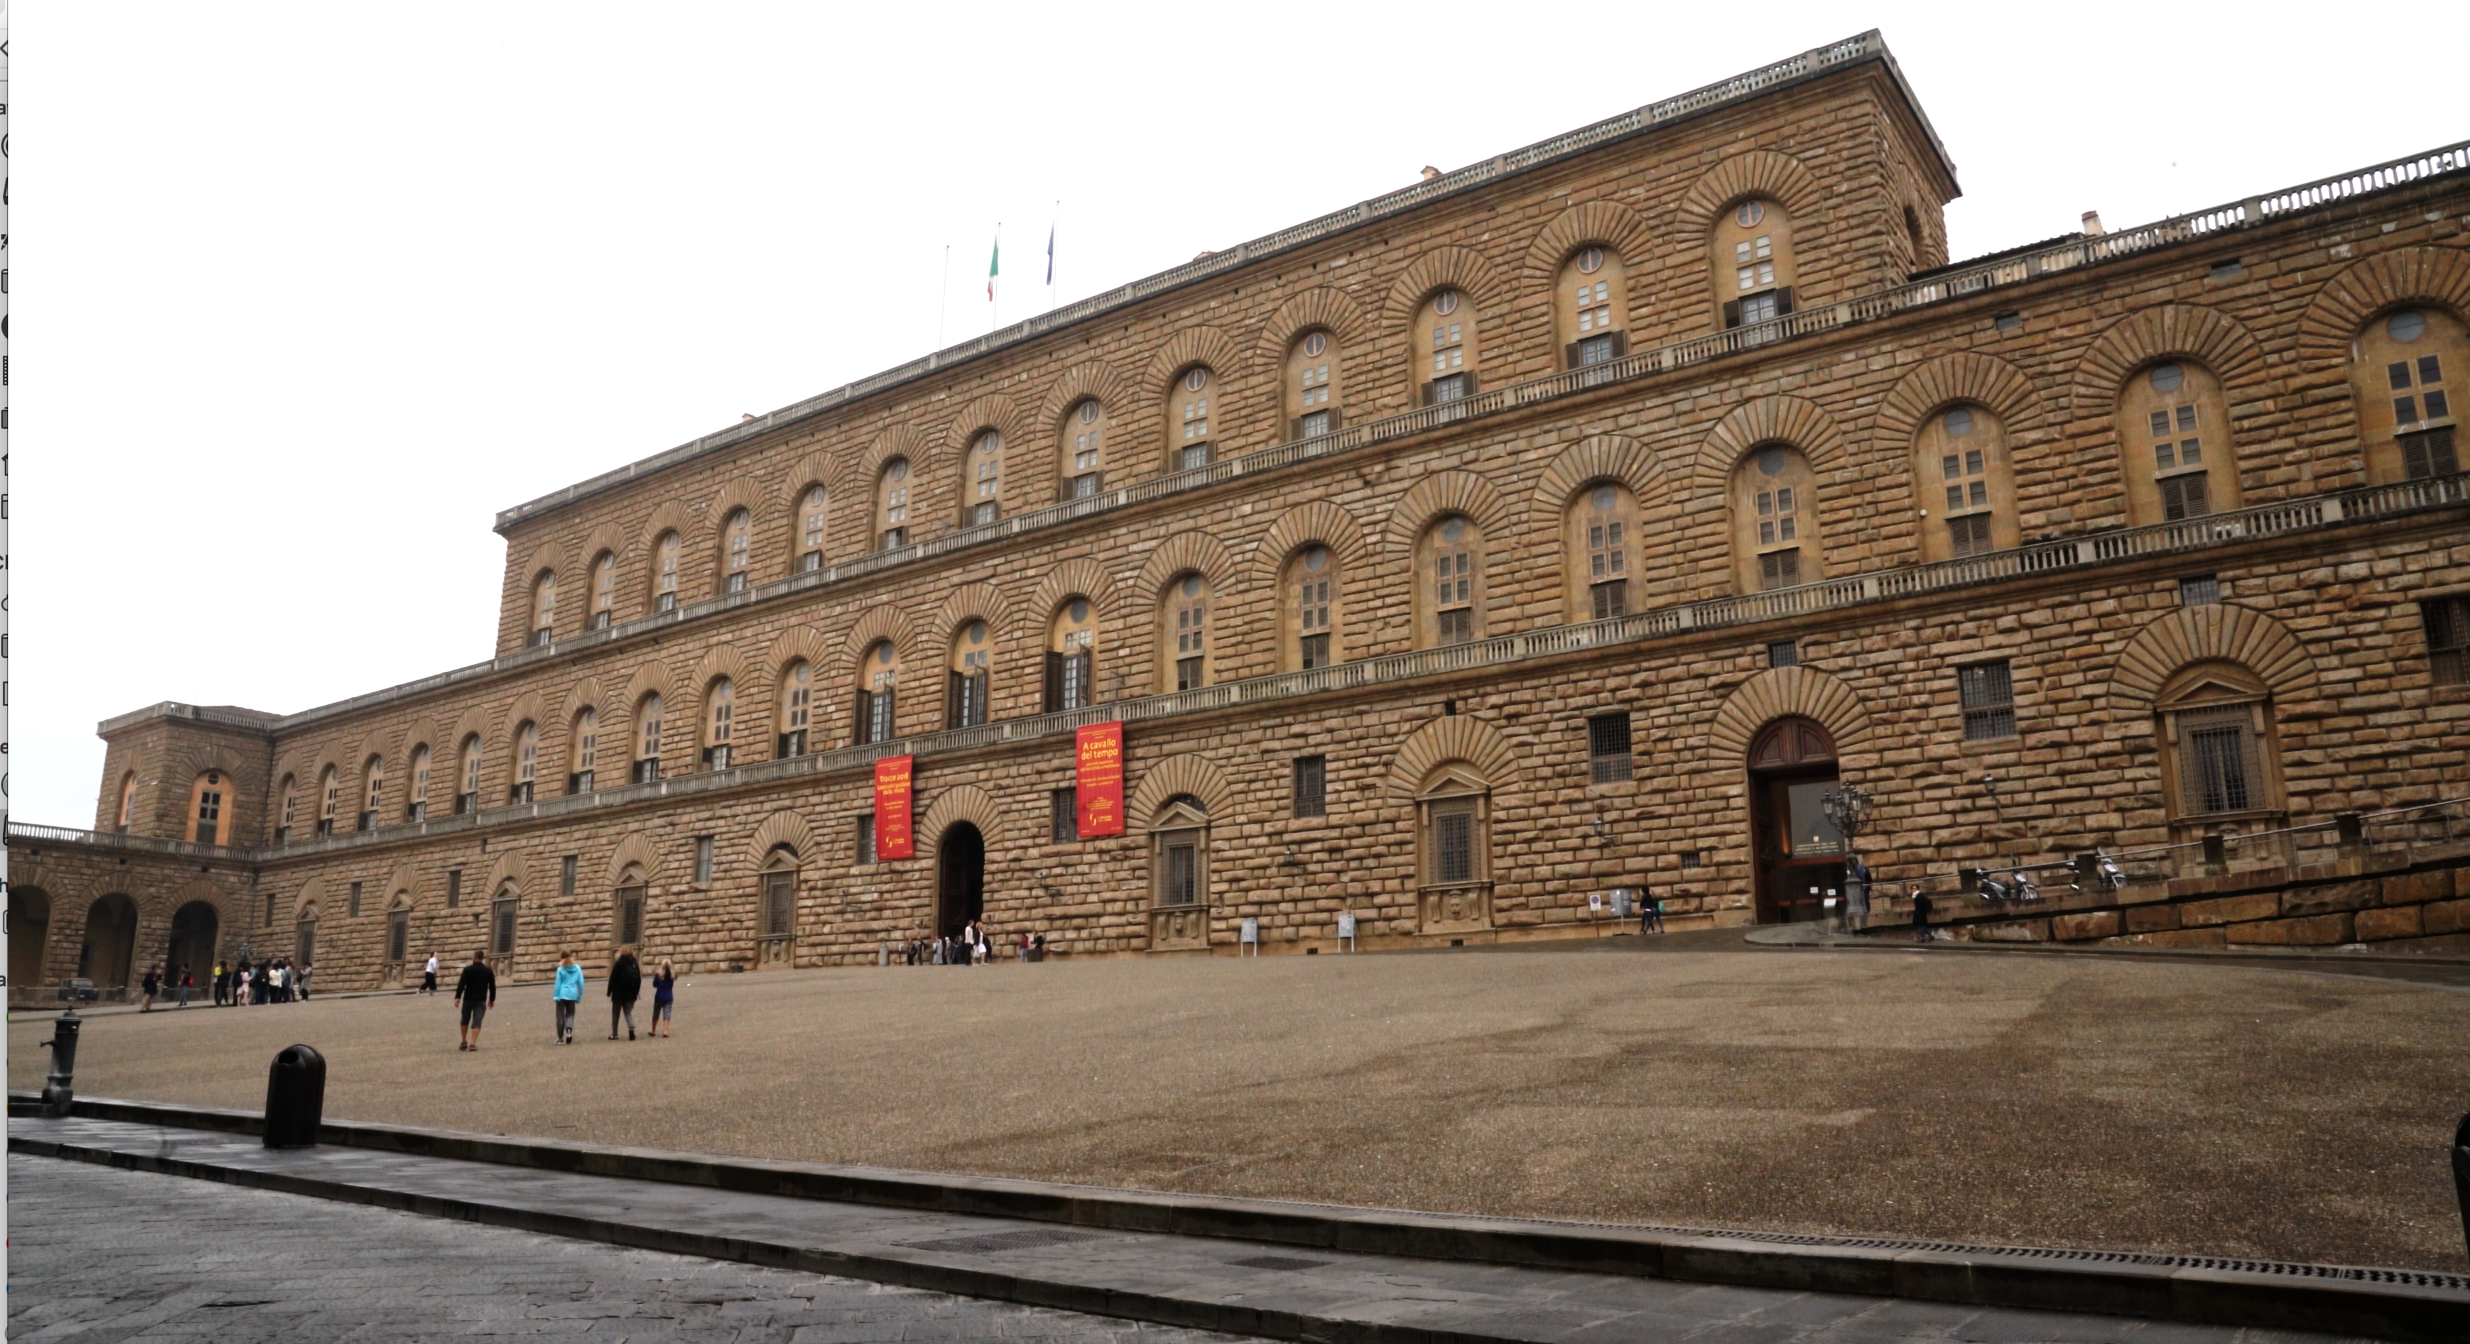  The Palazzo Pitti.  